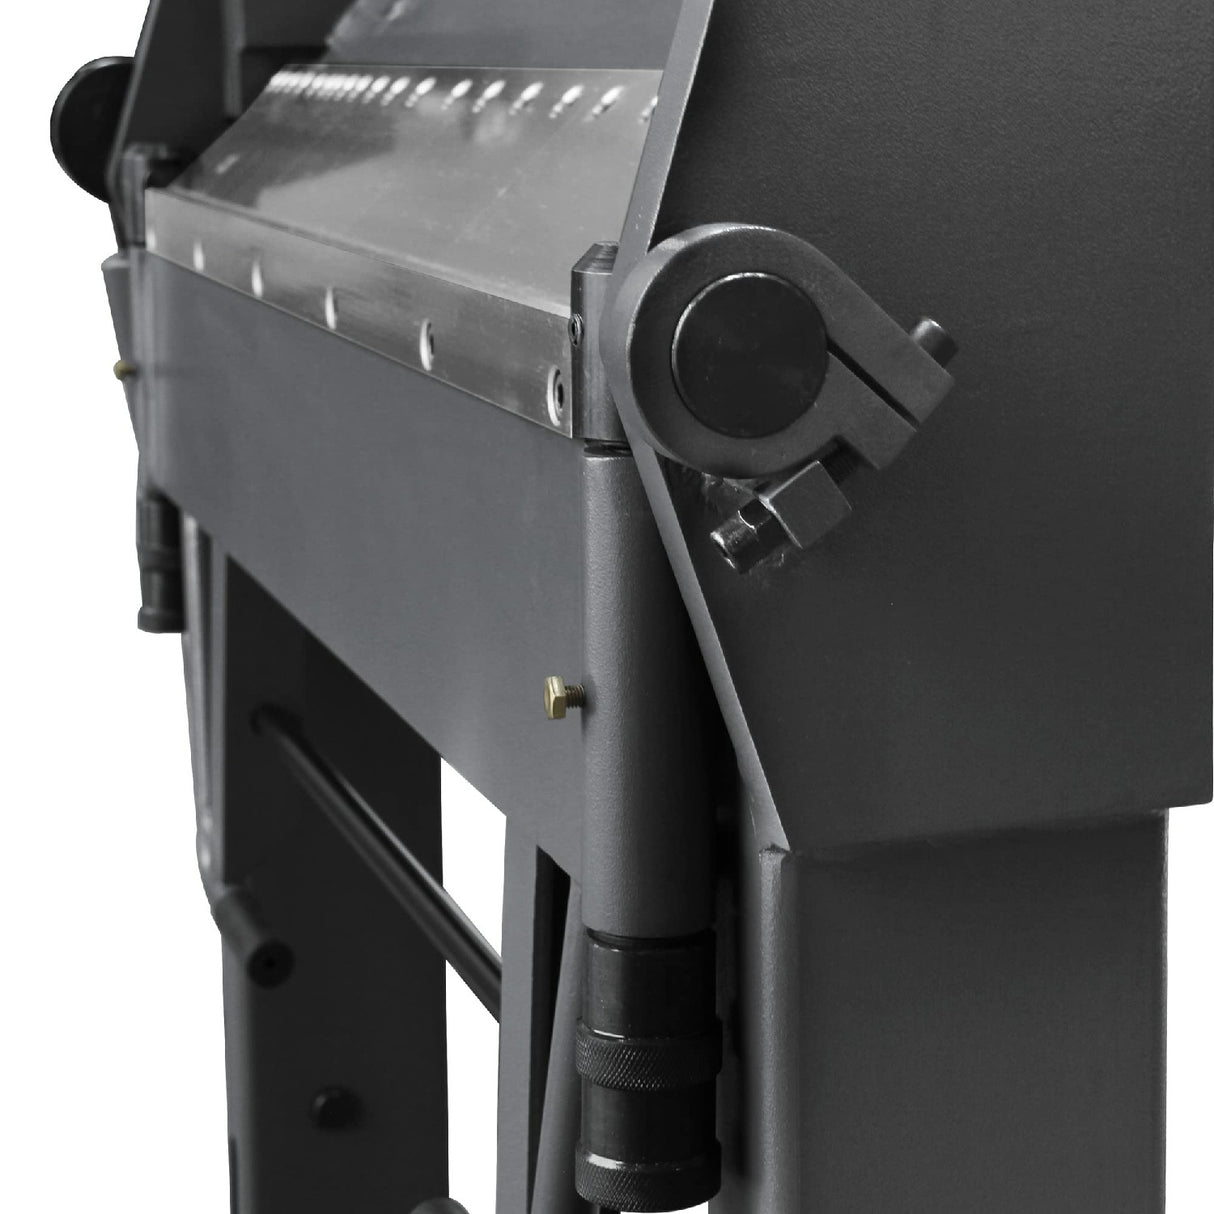 Kang Industrial PBB-4012 Pan Box Brake, Finger Brake for 2.5x1020 mm Mild Steel Plate